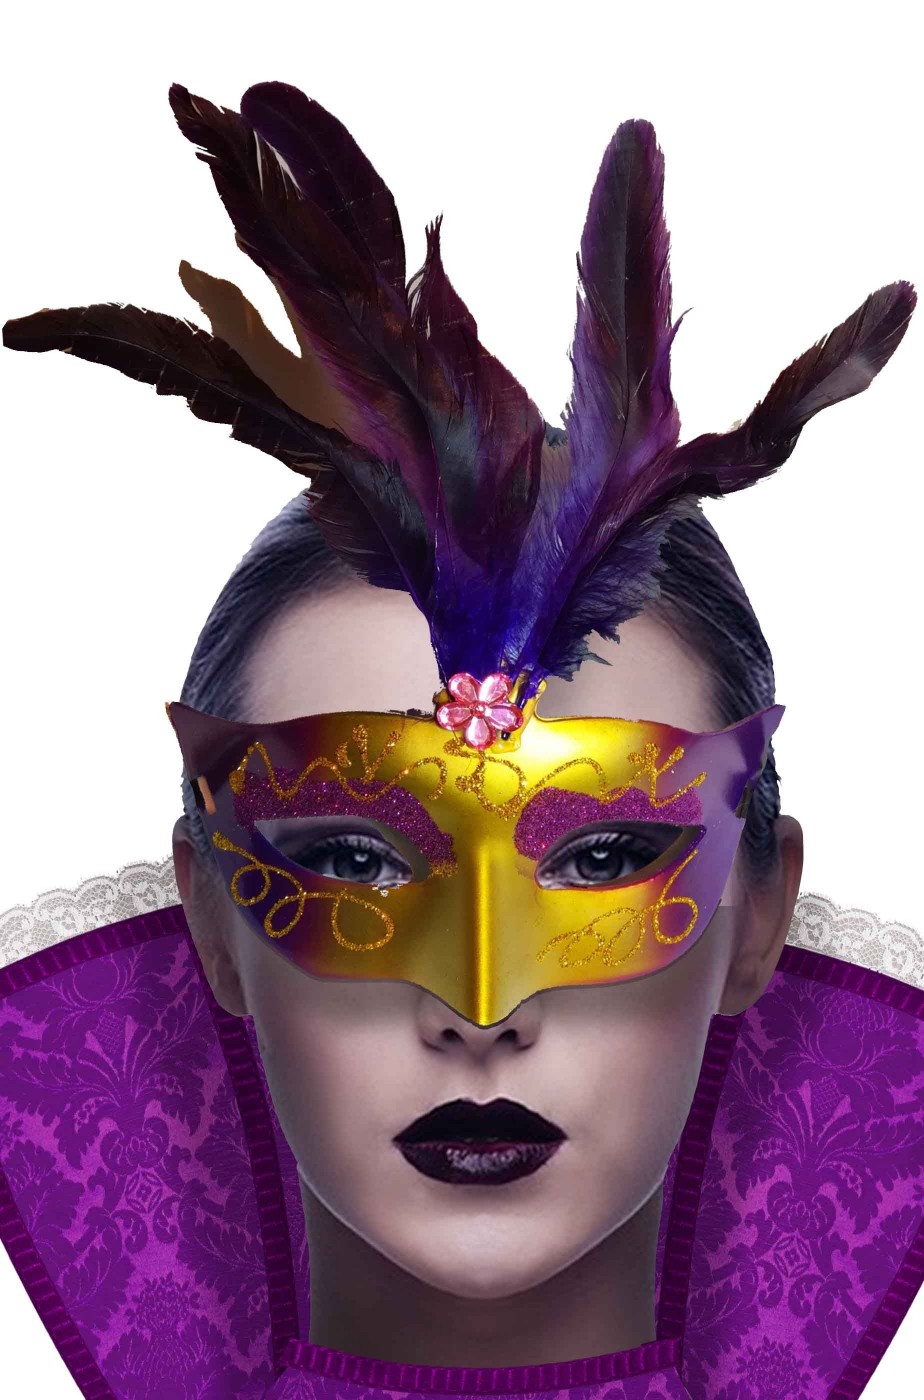 Maschera di carnevale stile veneziano adulto viola ed oro con piume